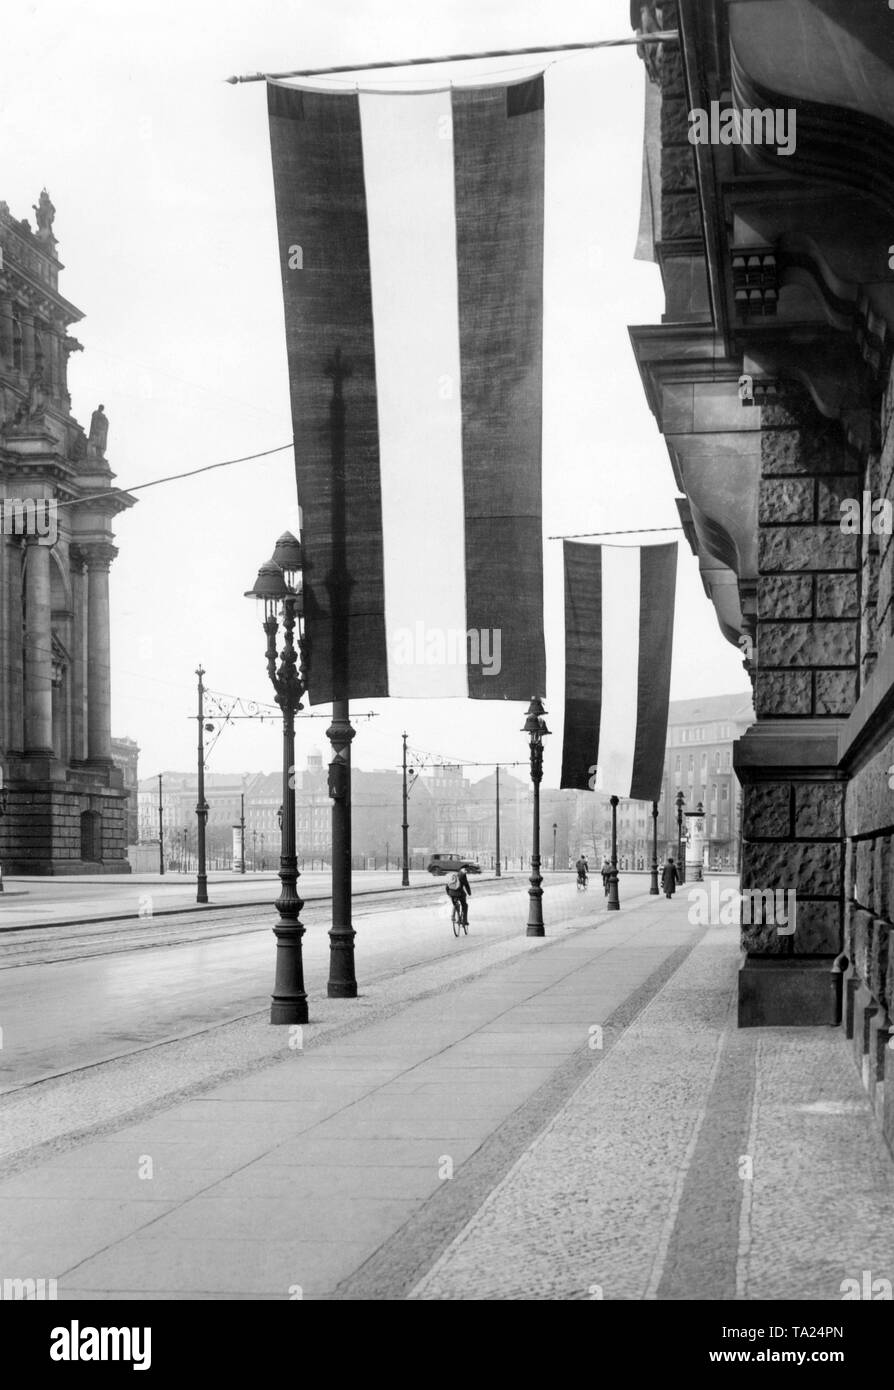 Negro-blanco-rojo banderas colgando en ocasión del Landtag prusiano elecciones celebradas en la sede de la fiesta nacional alemana en el Friedrich-Ebert-Strasse, Berlín. Foto de stock